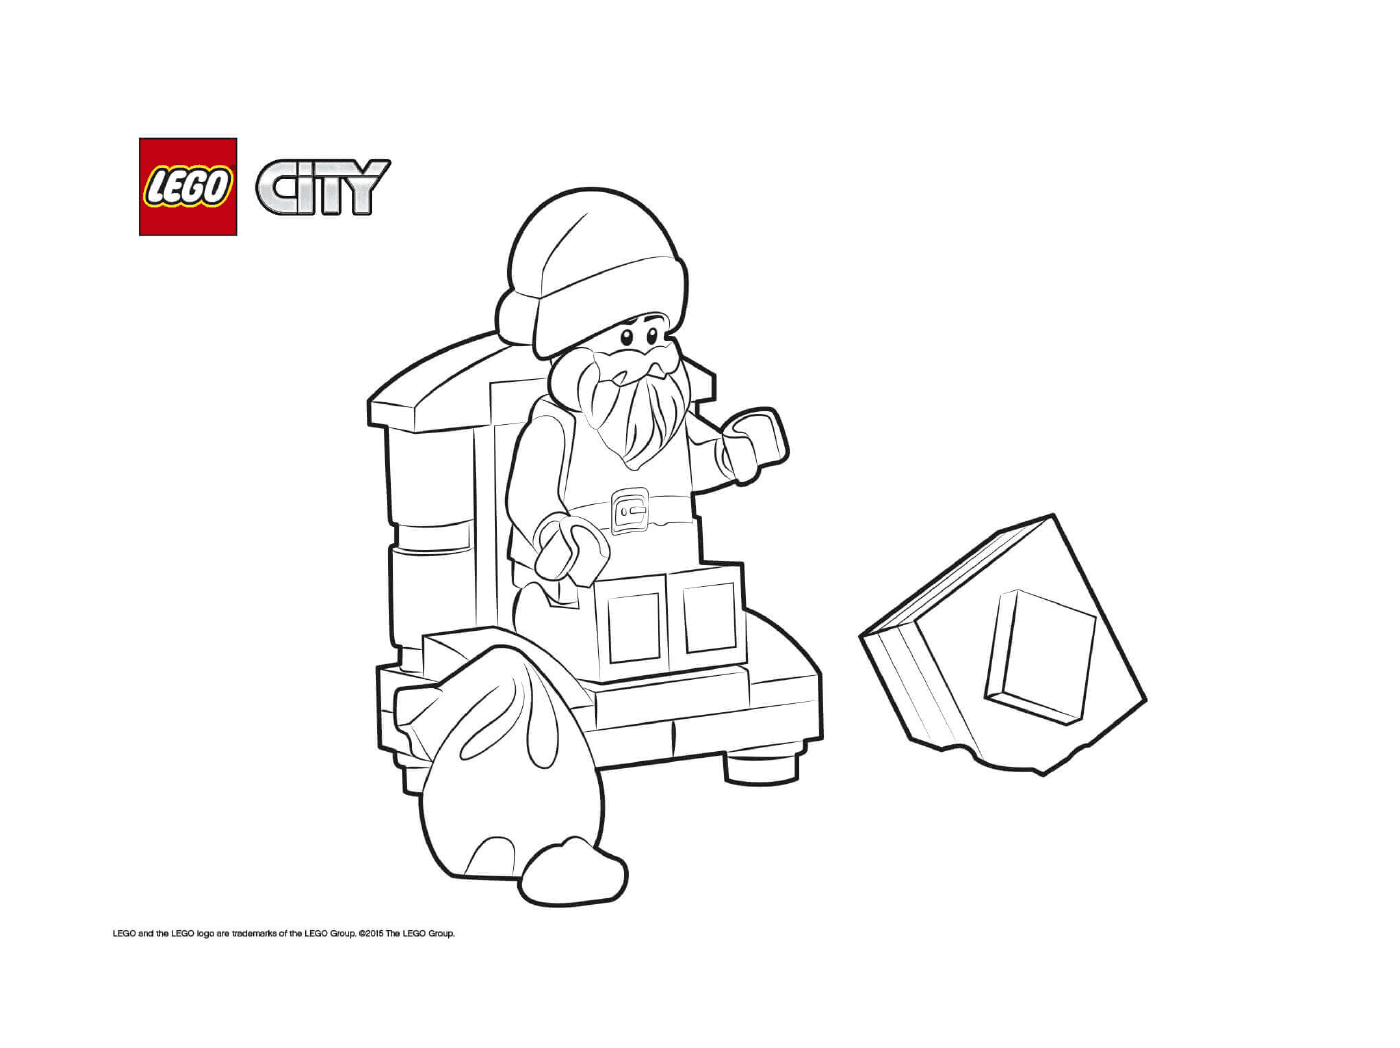  Ciudad de Santa Lego 